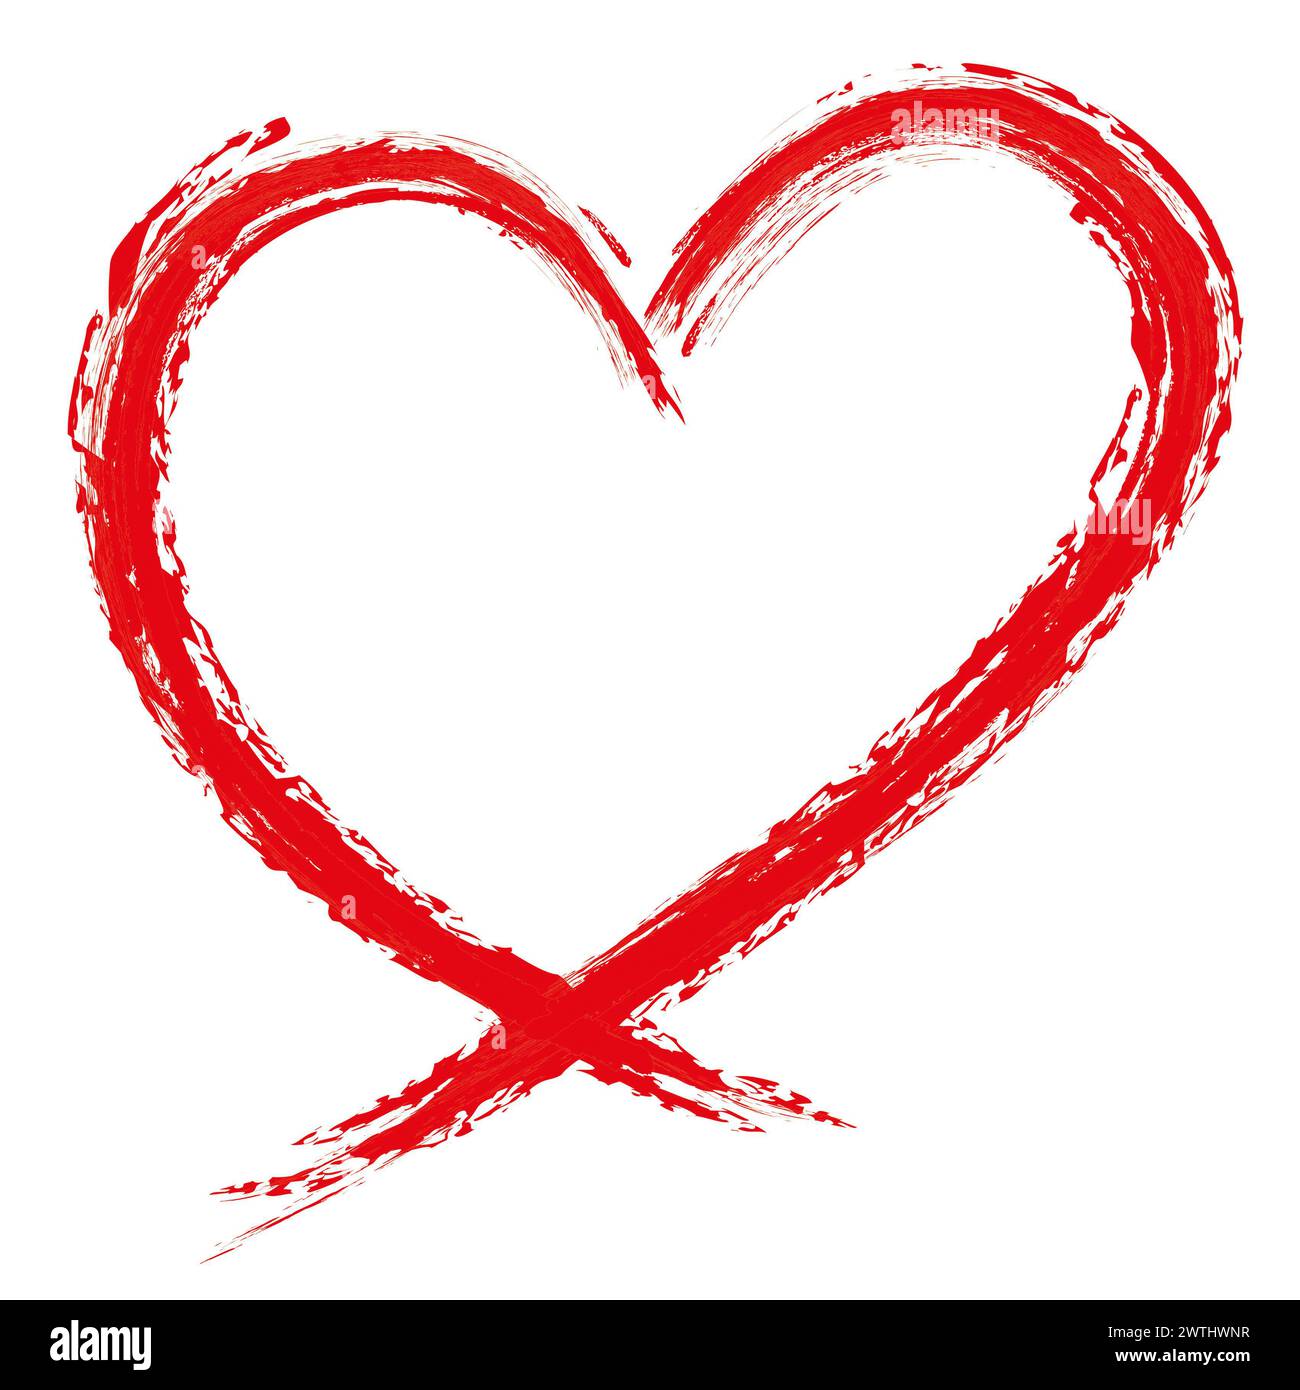 Cœur d'amour rouge grunge fait de coups bruts isolés sur fond blanc pour la Saint-Valentin, mariage ou autre but. Dessin à la main. Banque D'Images